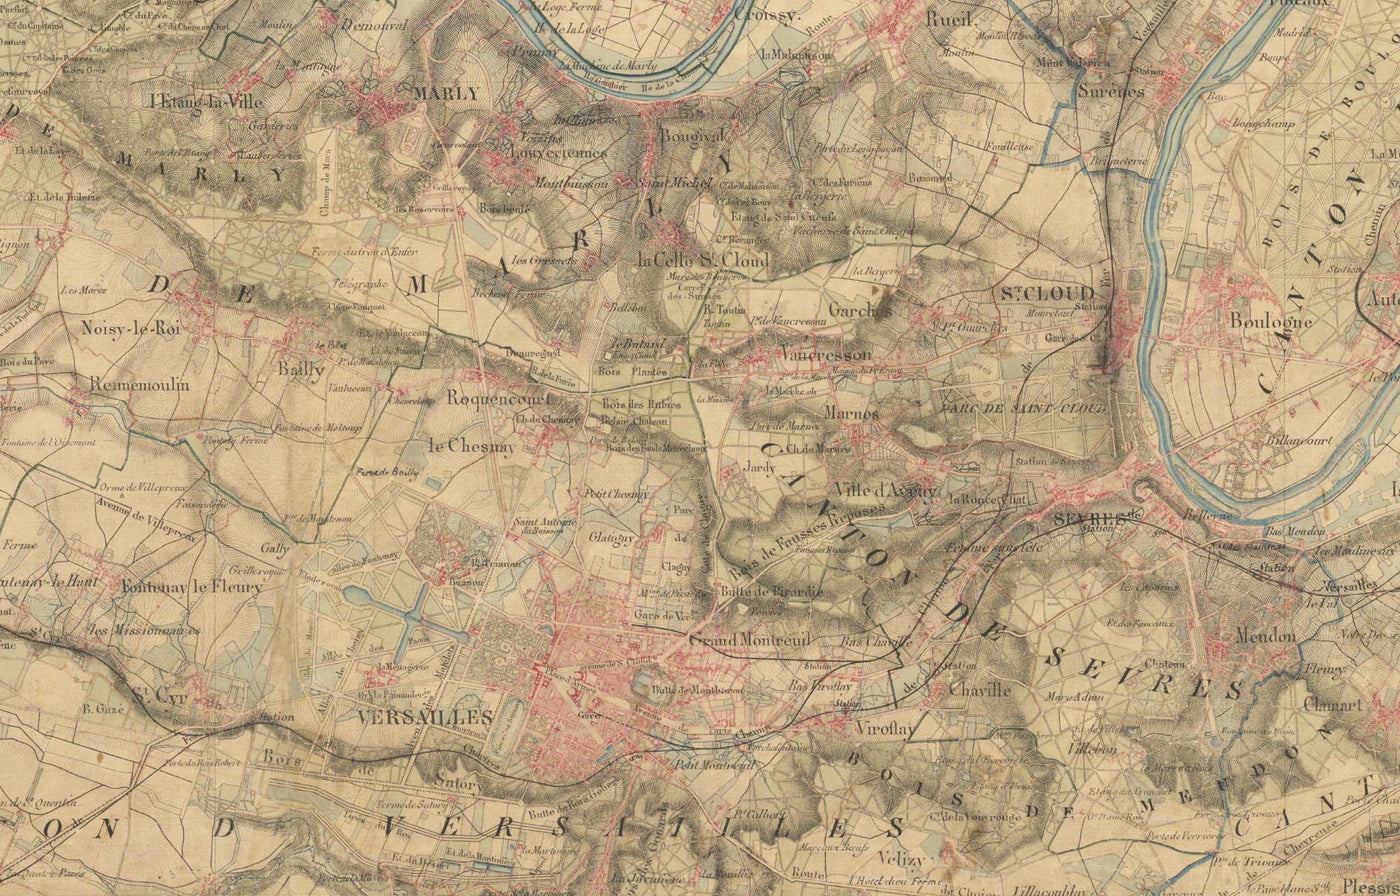 Carte ancienne (France) faite à la main - Faites votre propre carte de l'état-major (1800s French General Chart)